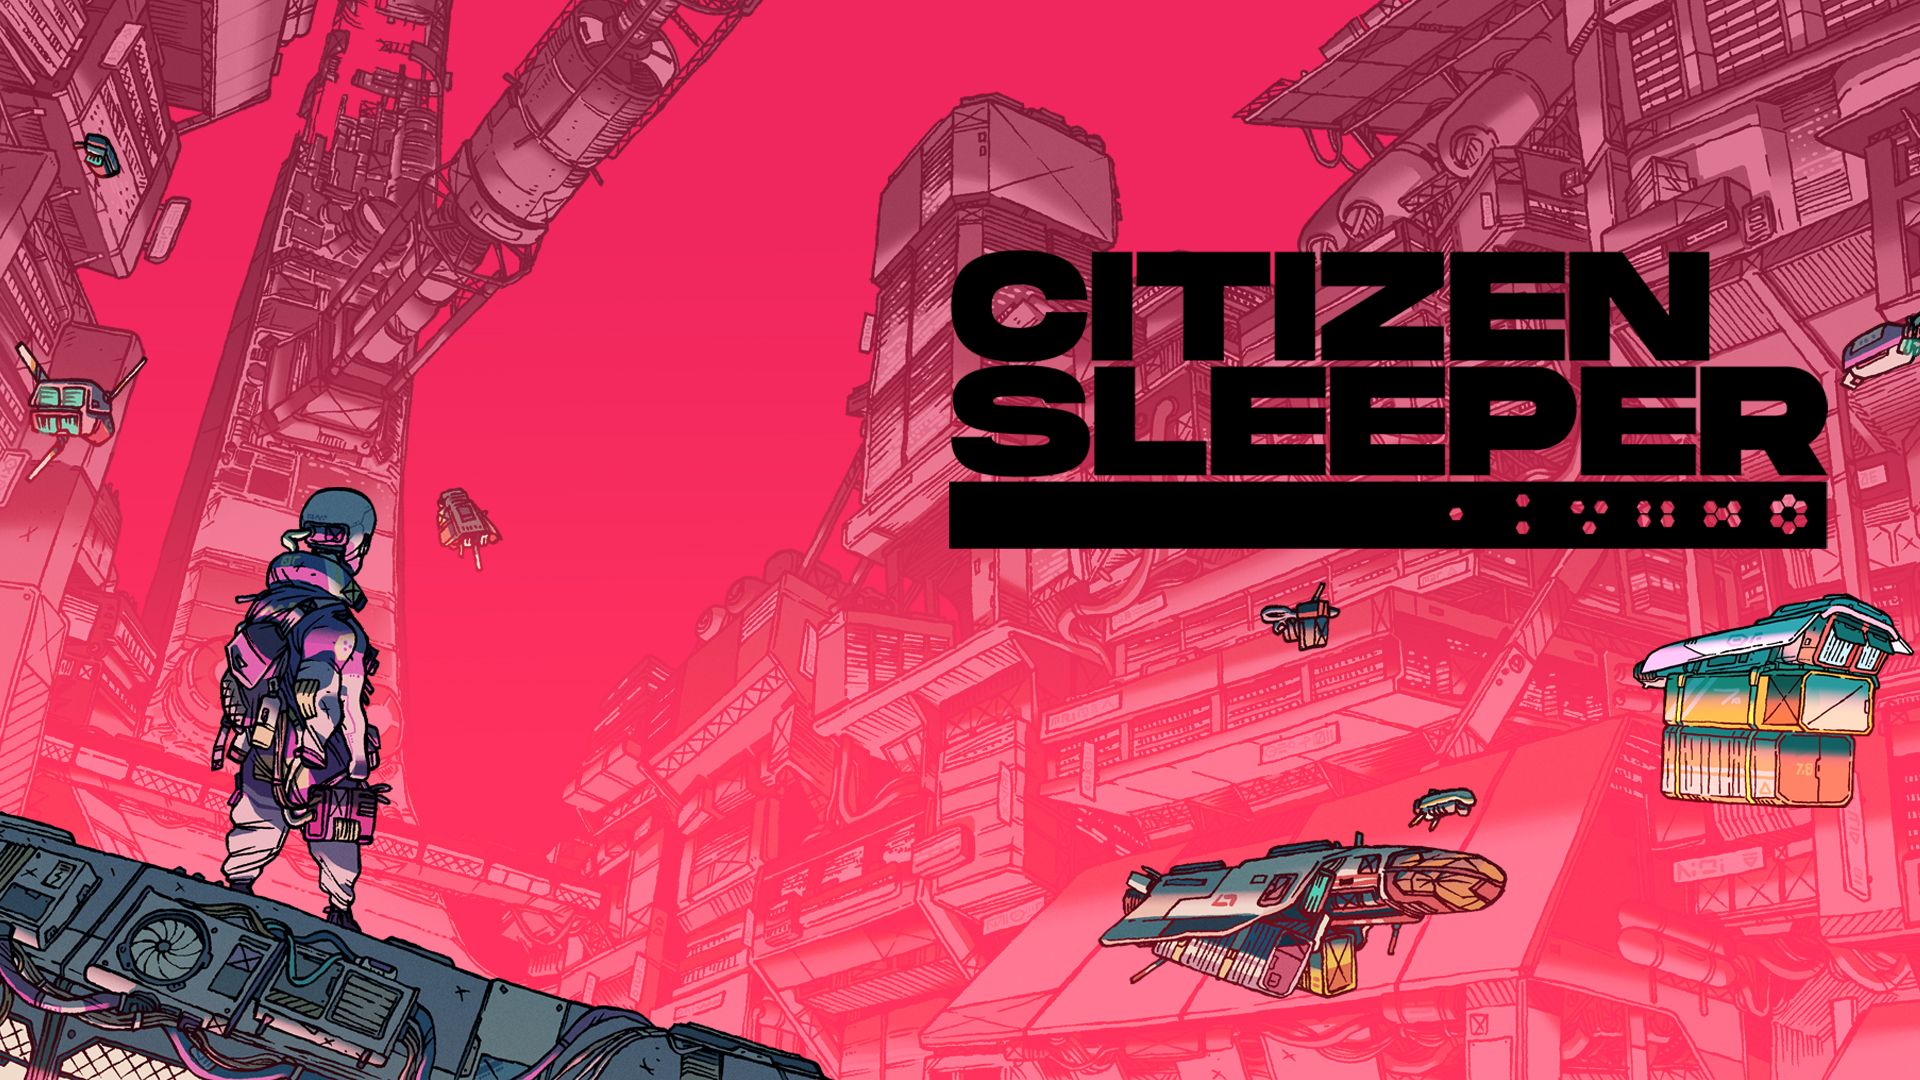 Citizen Sleeper